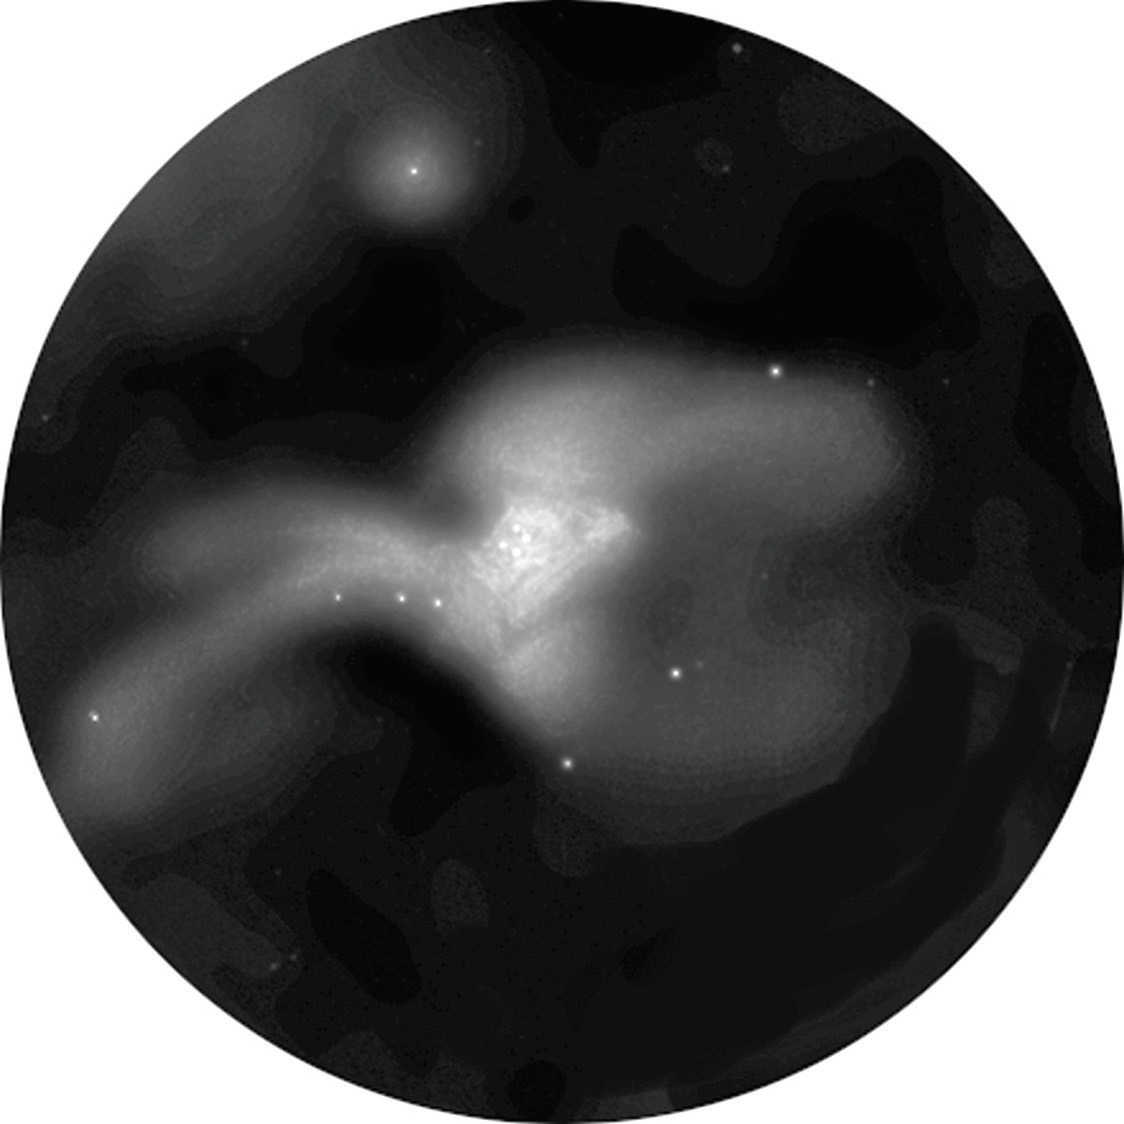 Auch im Teleskop ist der Orionnebel
ein wunderbares Objekt: Anblick von M 42 in einem
Reflektor mit 150mm Öffnung. L. Spix